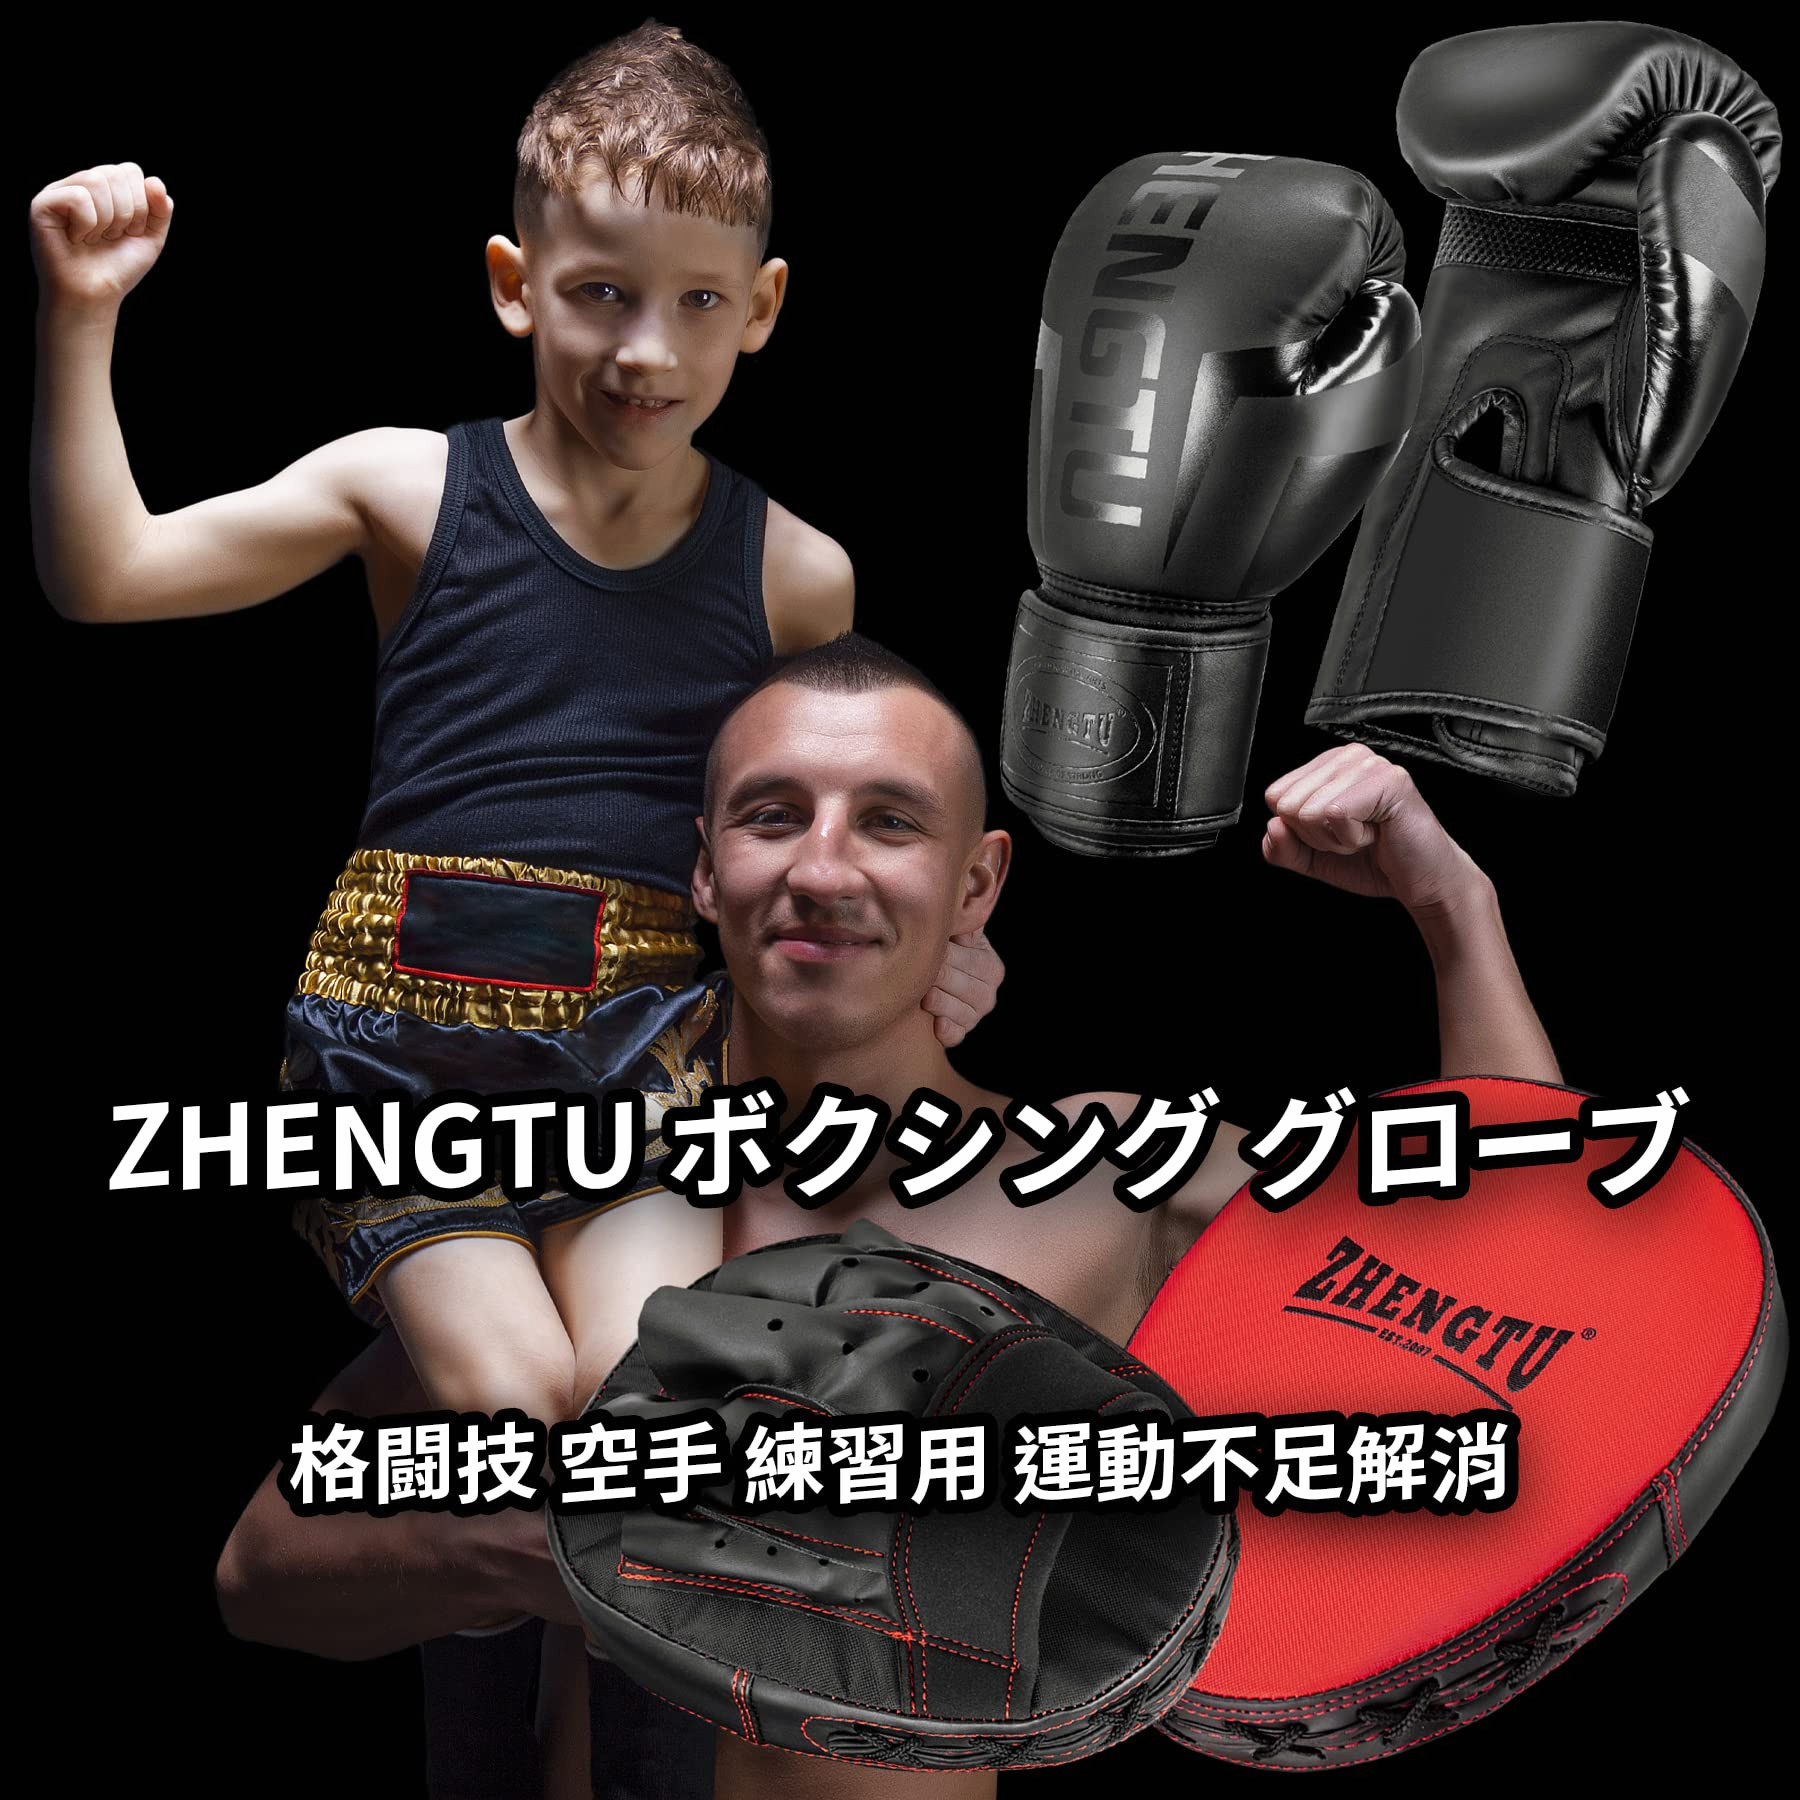 ZHENGTU ボクシンググローブ 子供 ボクシング グローブ ミット セット 親子でボクシング グローブミット セット パンチンググローブ付き  格闘技 親子 空手 練習用 運動不足解消（子供用） 格闘技・武術